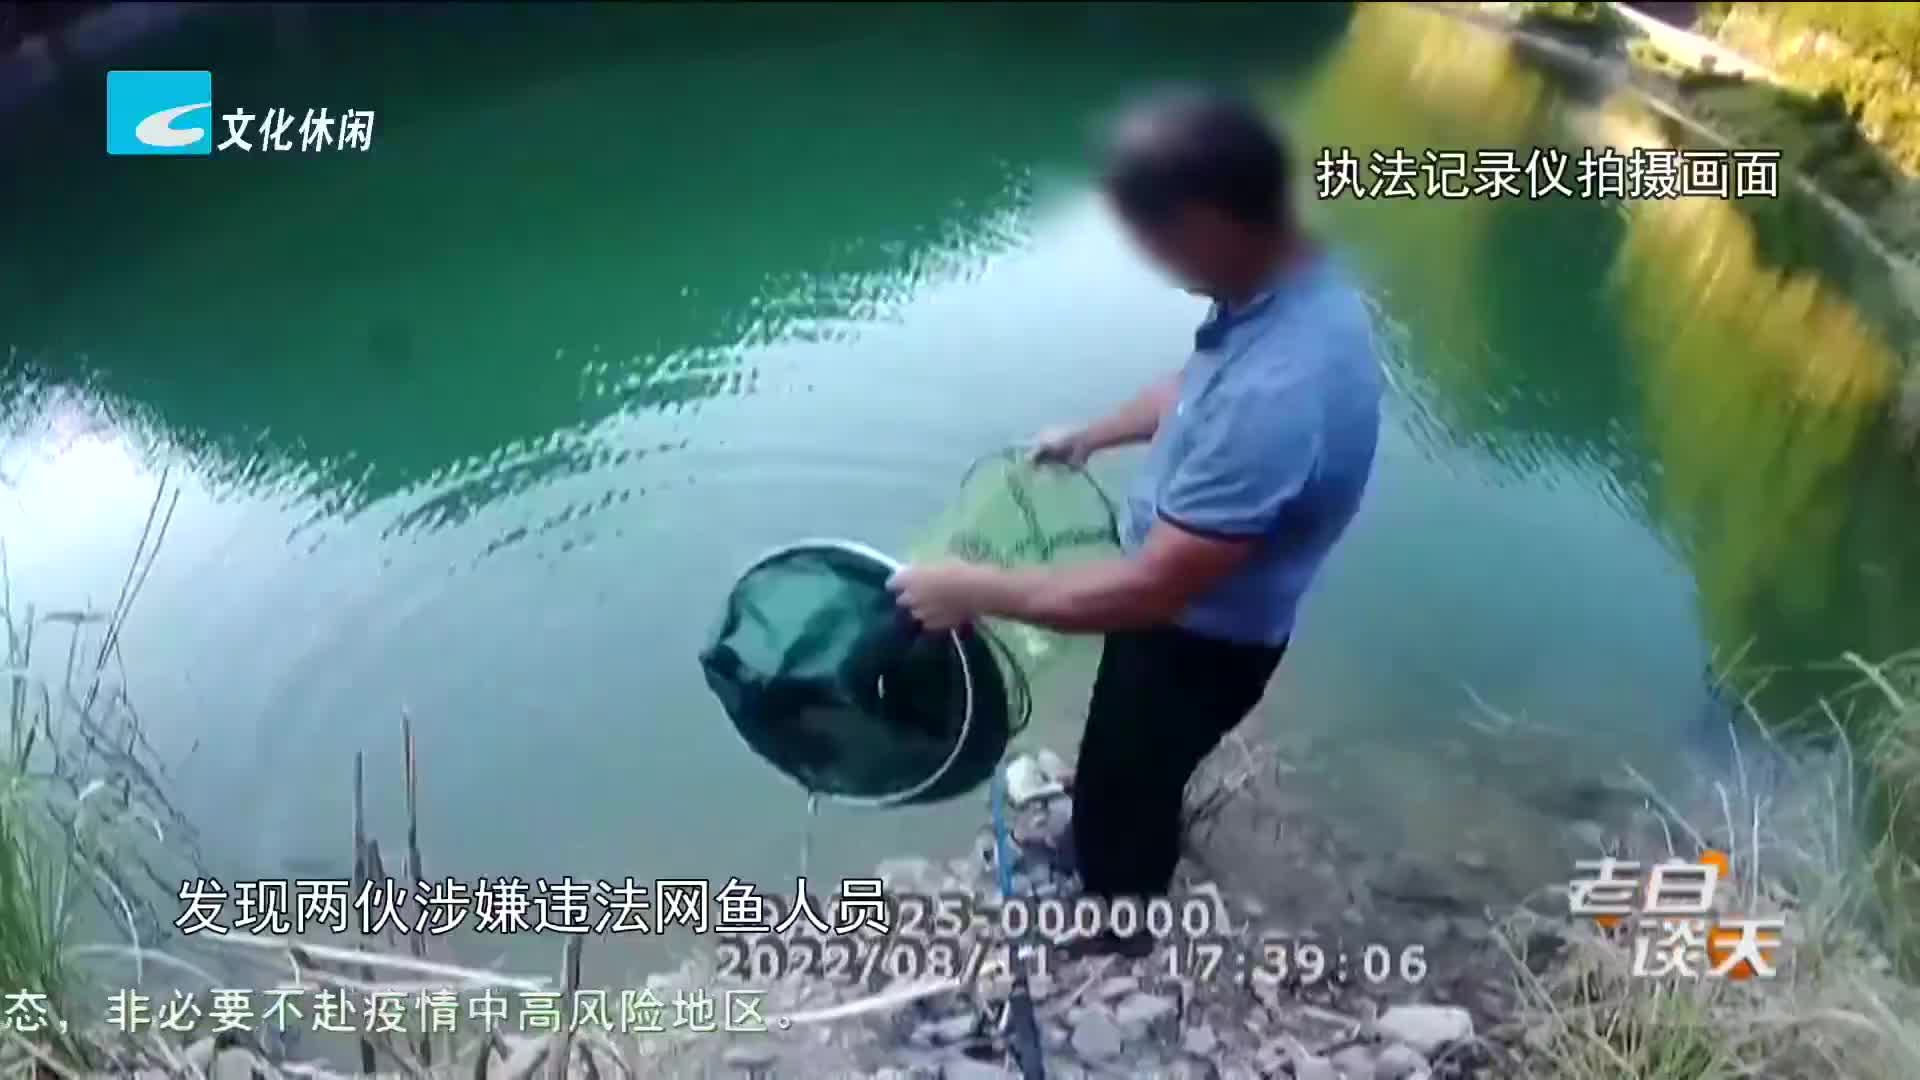 千峡湖库区开展联合执法 抓获2名违法捕捞人员